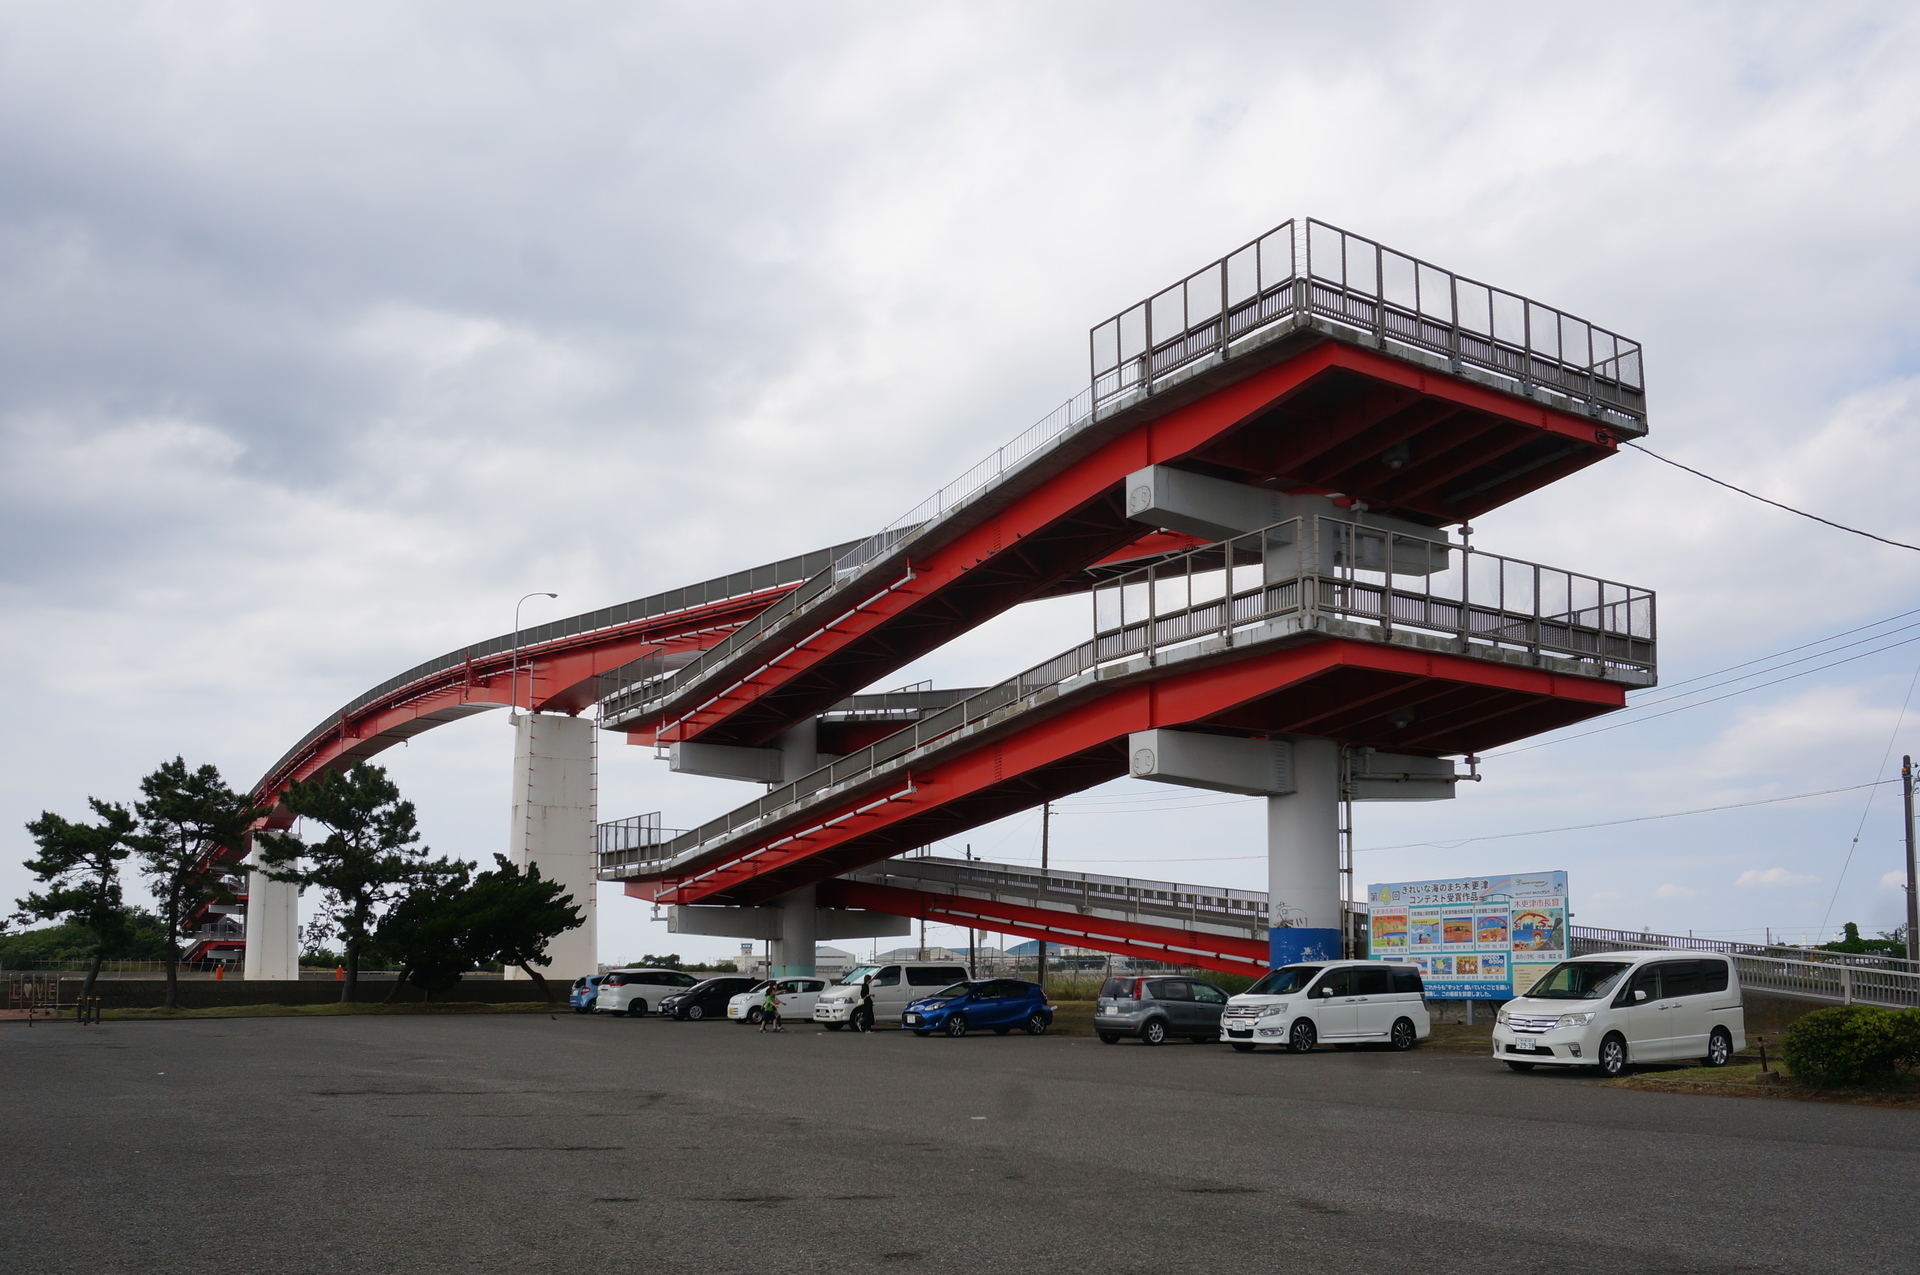 中の島大橋の前の鳥居崎公園駐車場に行って見た Ogu S Blog かずさ便り ちょっとだけpcの話も